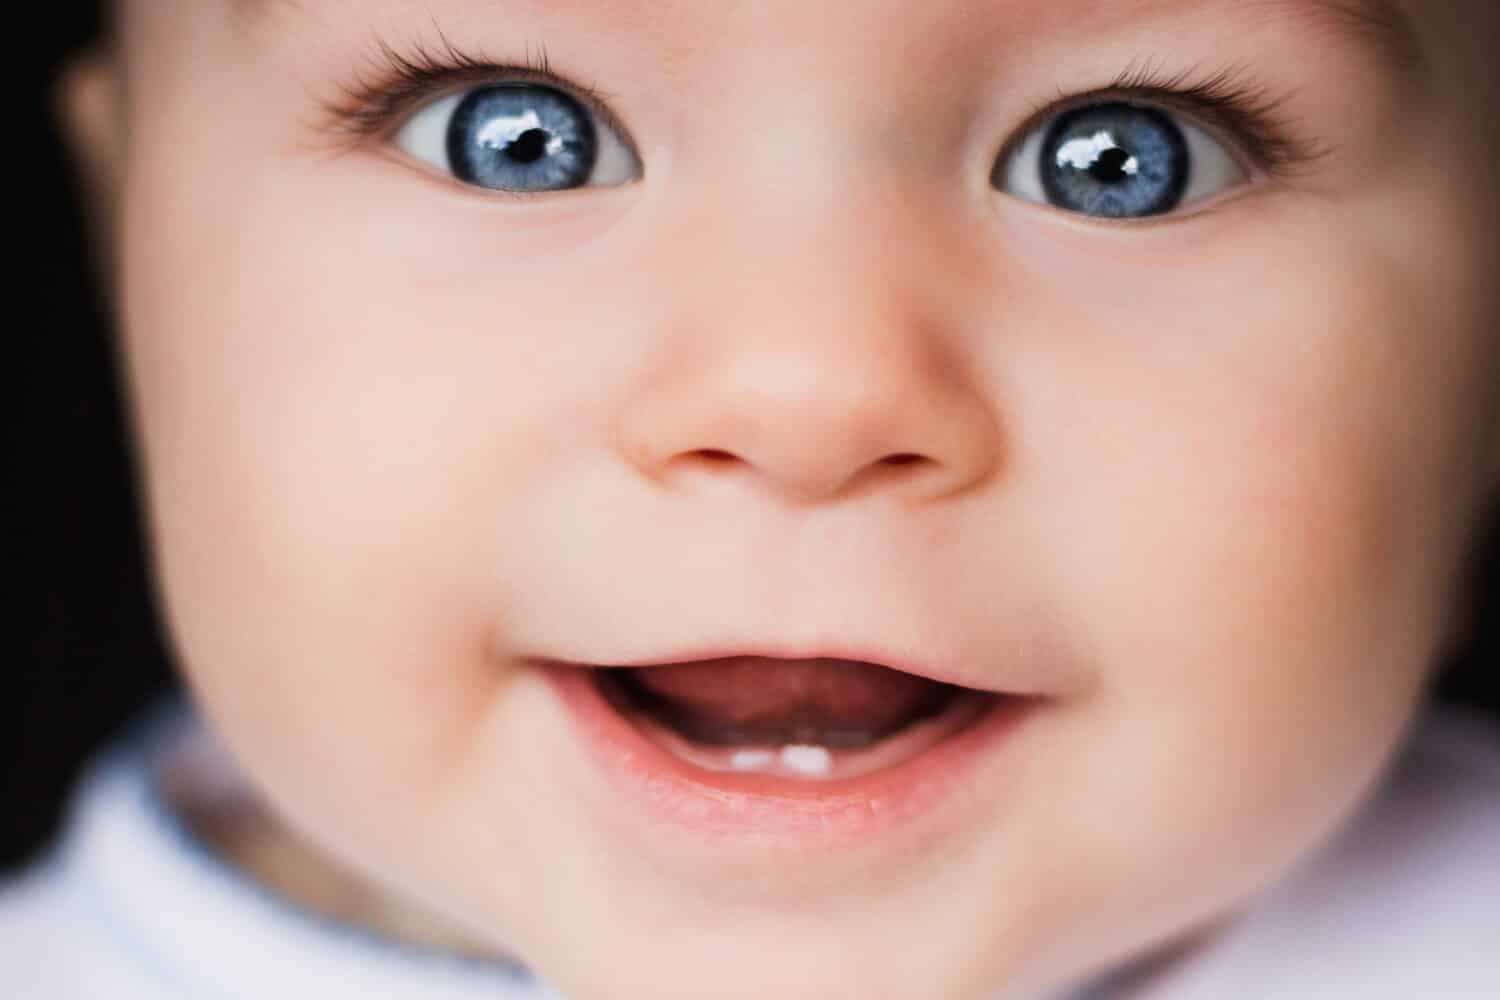 Ritratto del bambino.  Fronte del primo piano con gli occhi azzurri luminosi.  Bambini, occhi, oftalmologia, curiosità, felicità, esplorare il mondo, gioia, infanzia, psicologia, genitorialità, concetti di ritratto